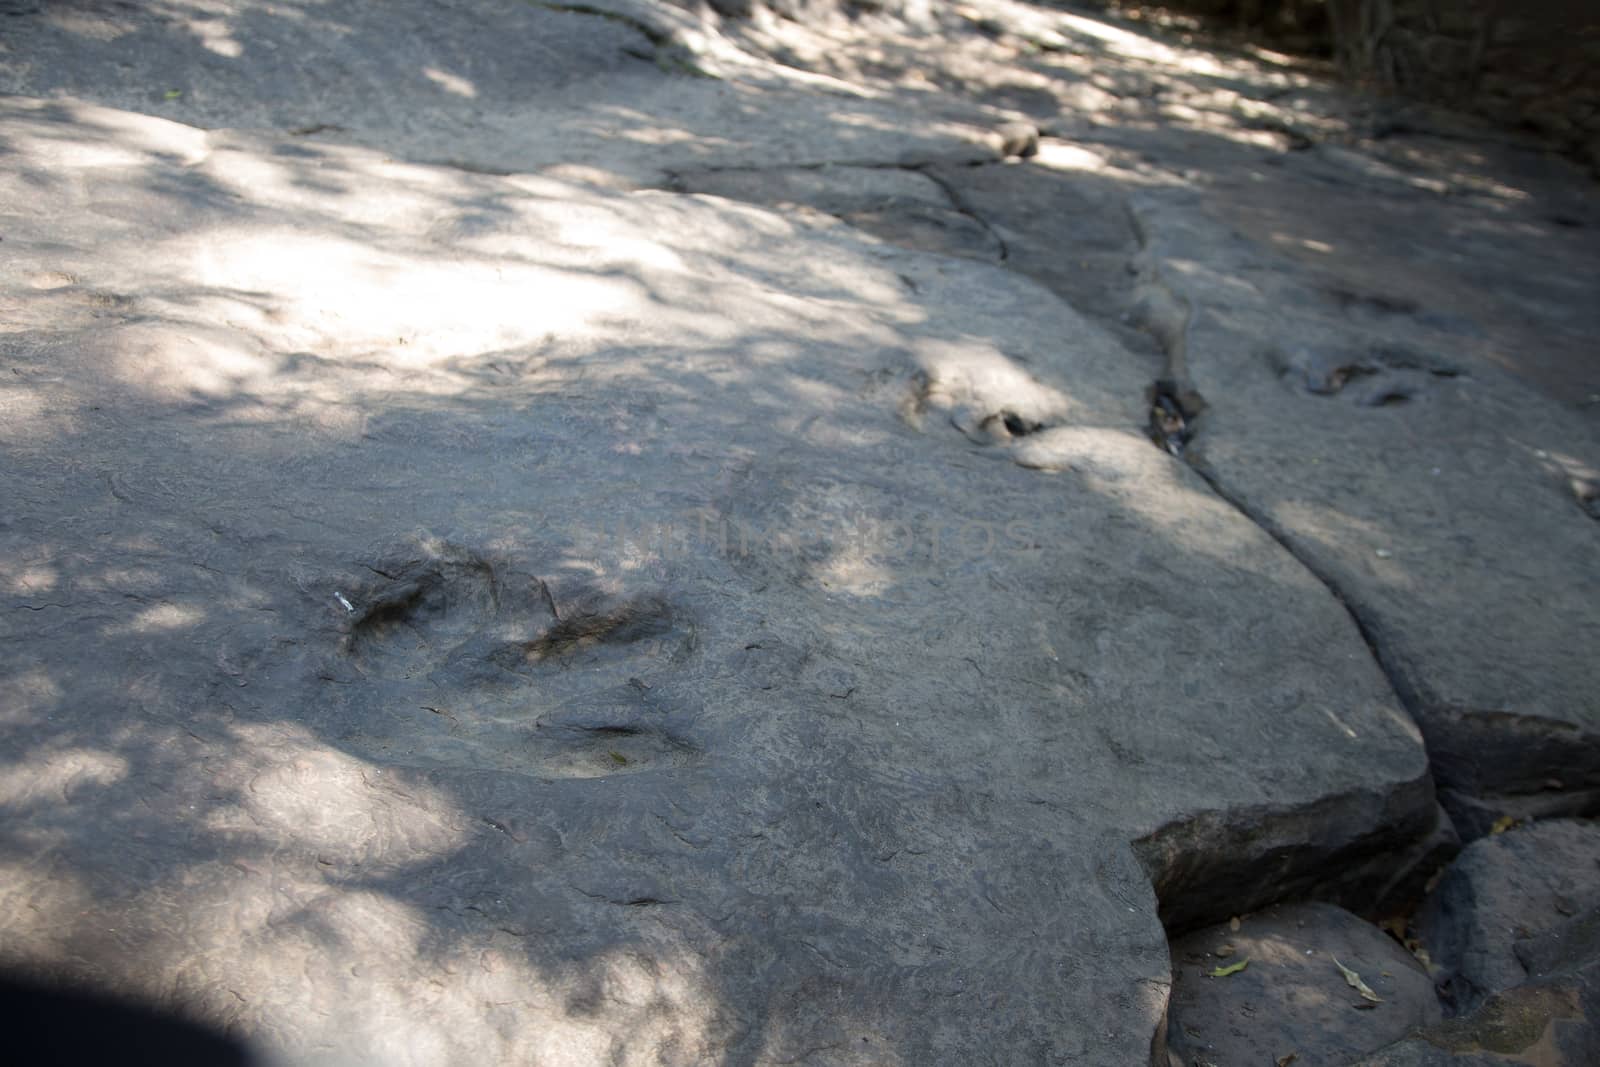 Real Detail of dinosaur tracks in thailand (dinosaur, footprints, footprint)